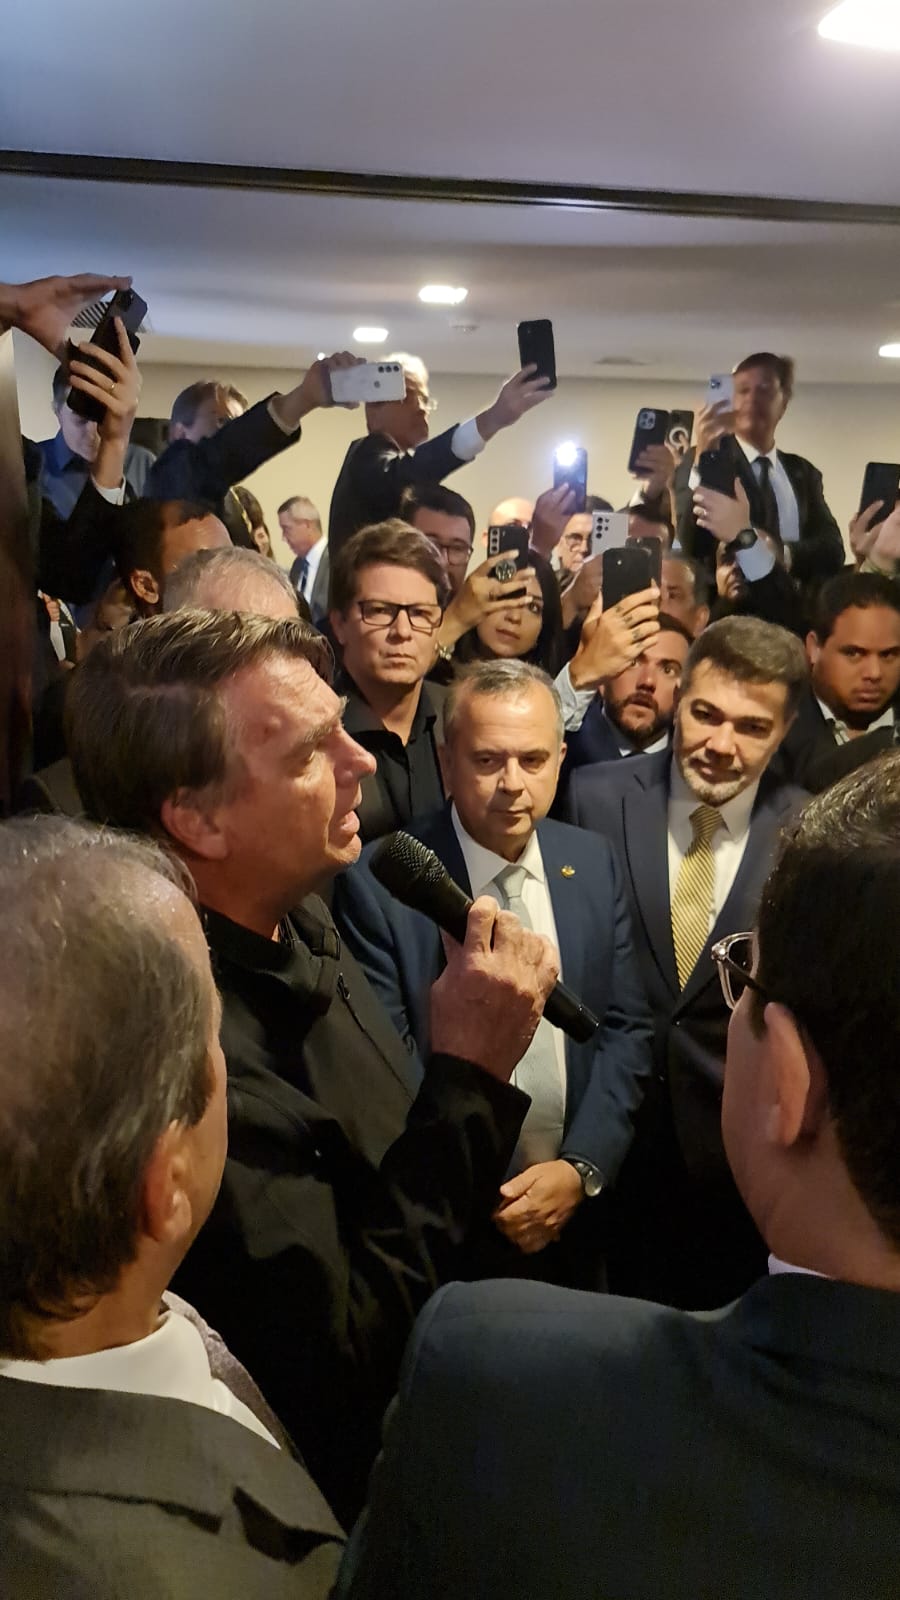 'Tudo lá é aquilo que queremos implementar aqui também', diz Bolsonaro sobre os EUA